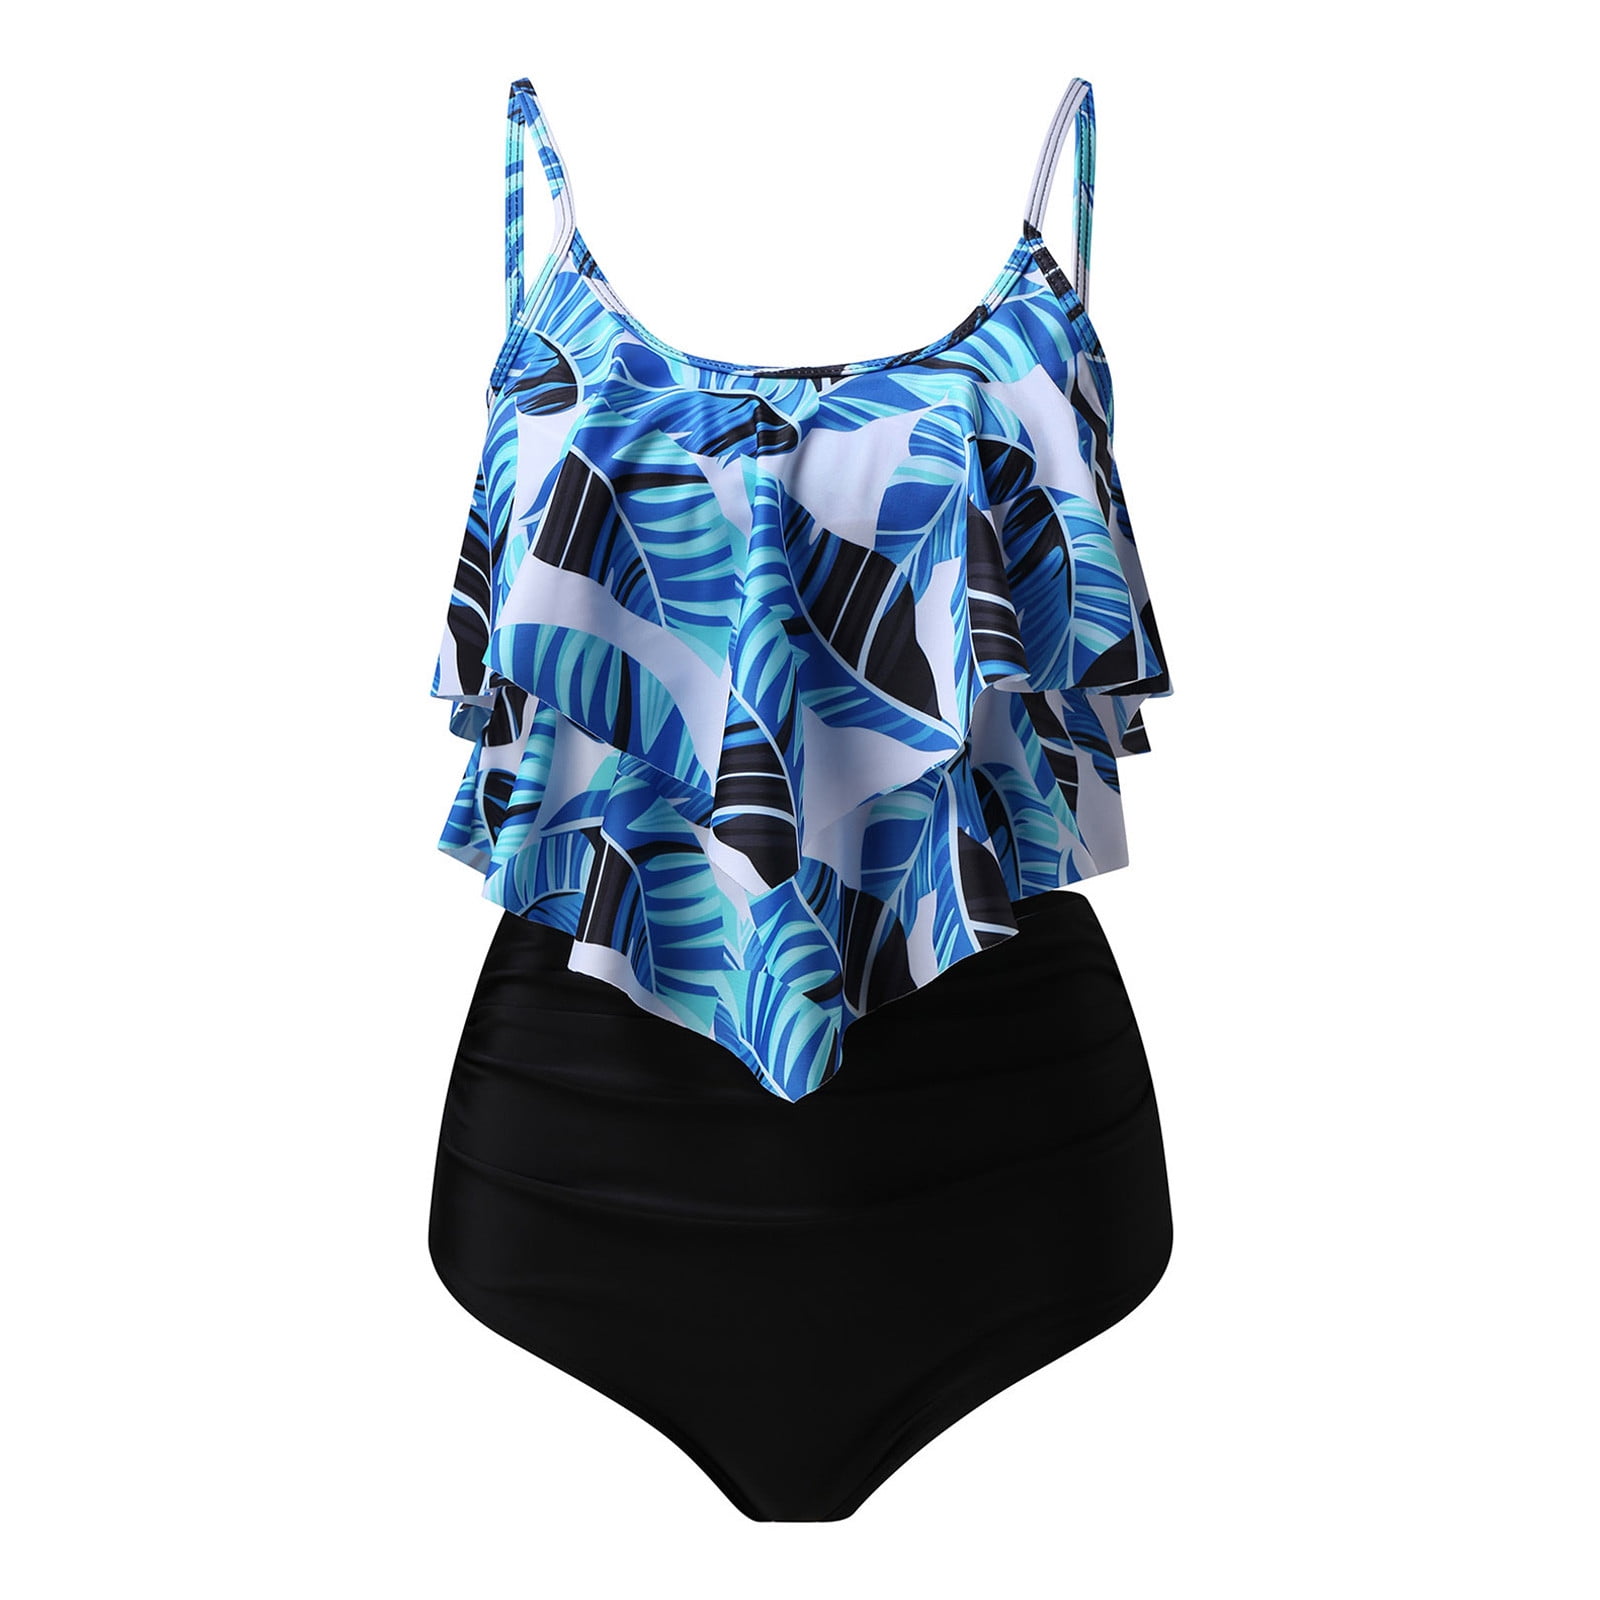 Women's Swimwear Women's Swimsuit With Bra Without Steel Support Bikini  Multi-Color Printed Swimsuit Split Swimsuit Blue L 